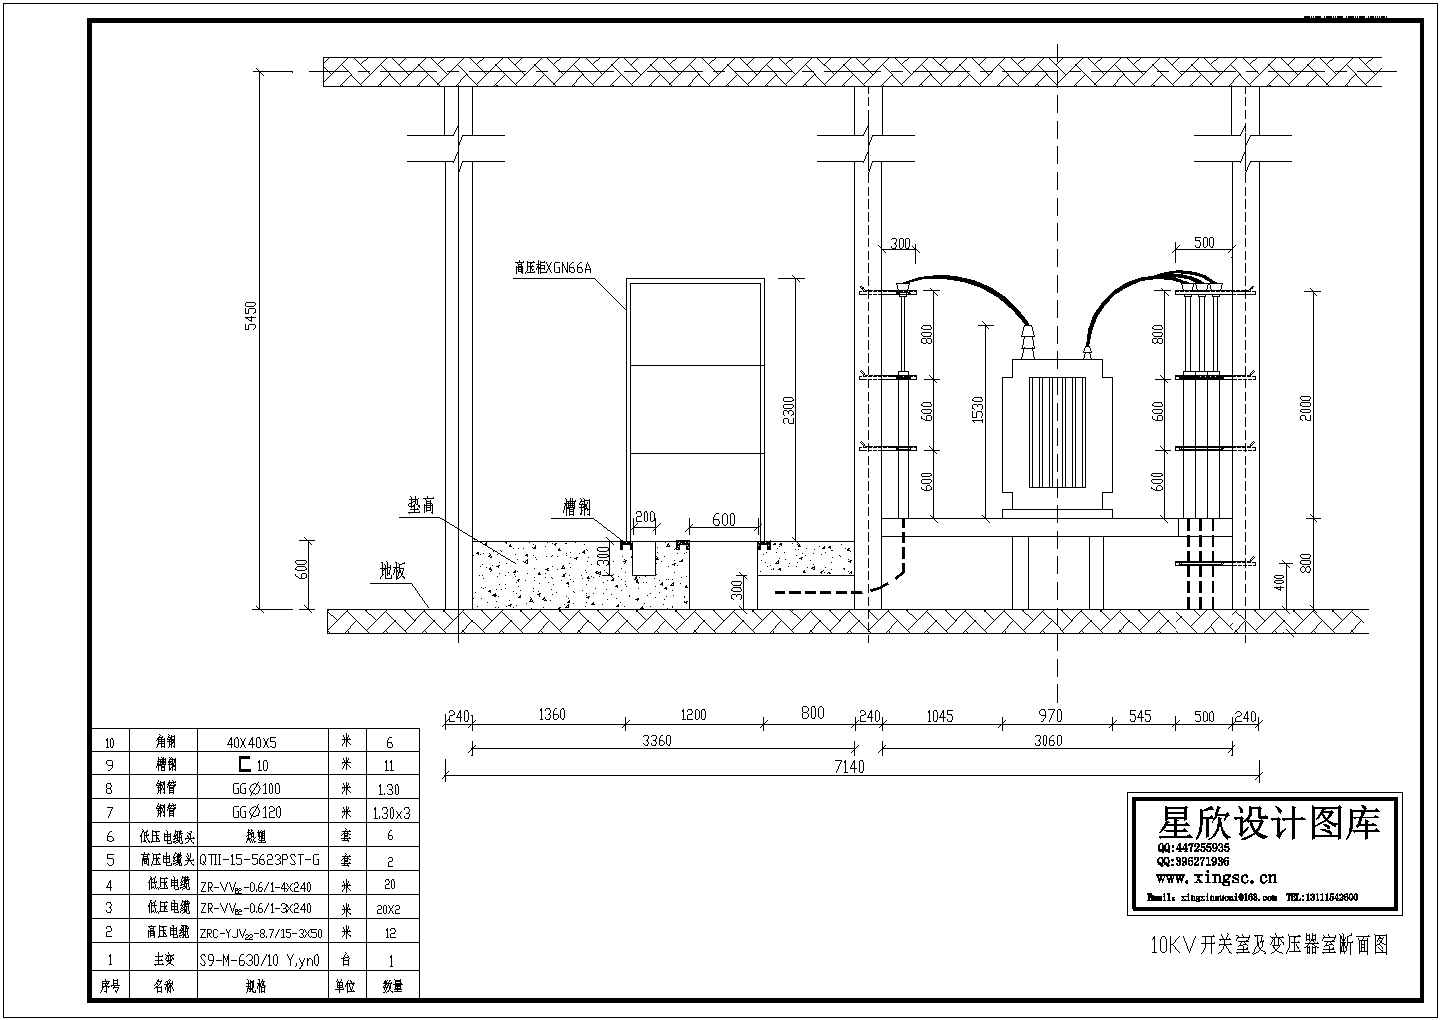 10kV配电装置断面设计CAD图